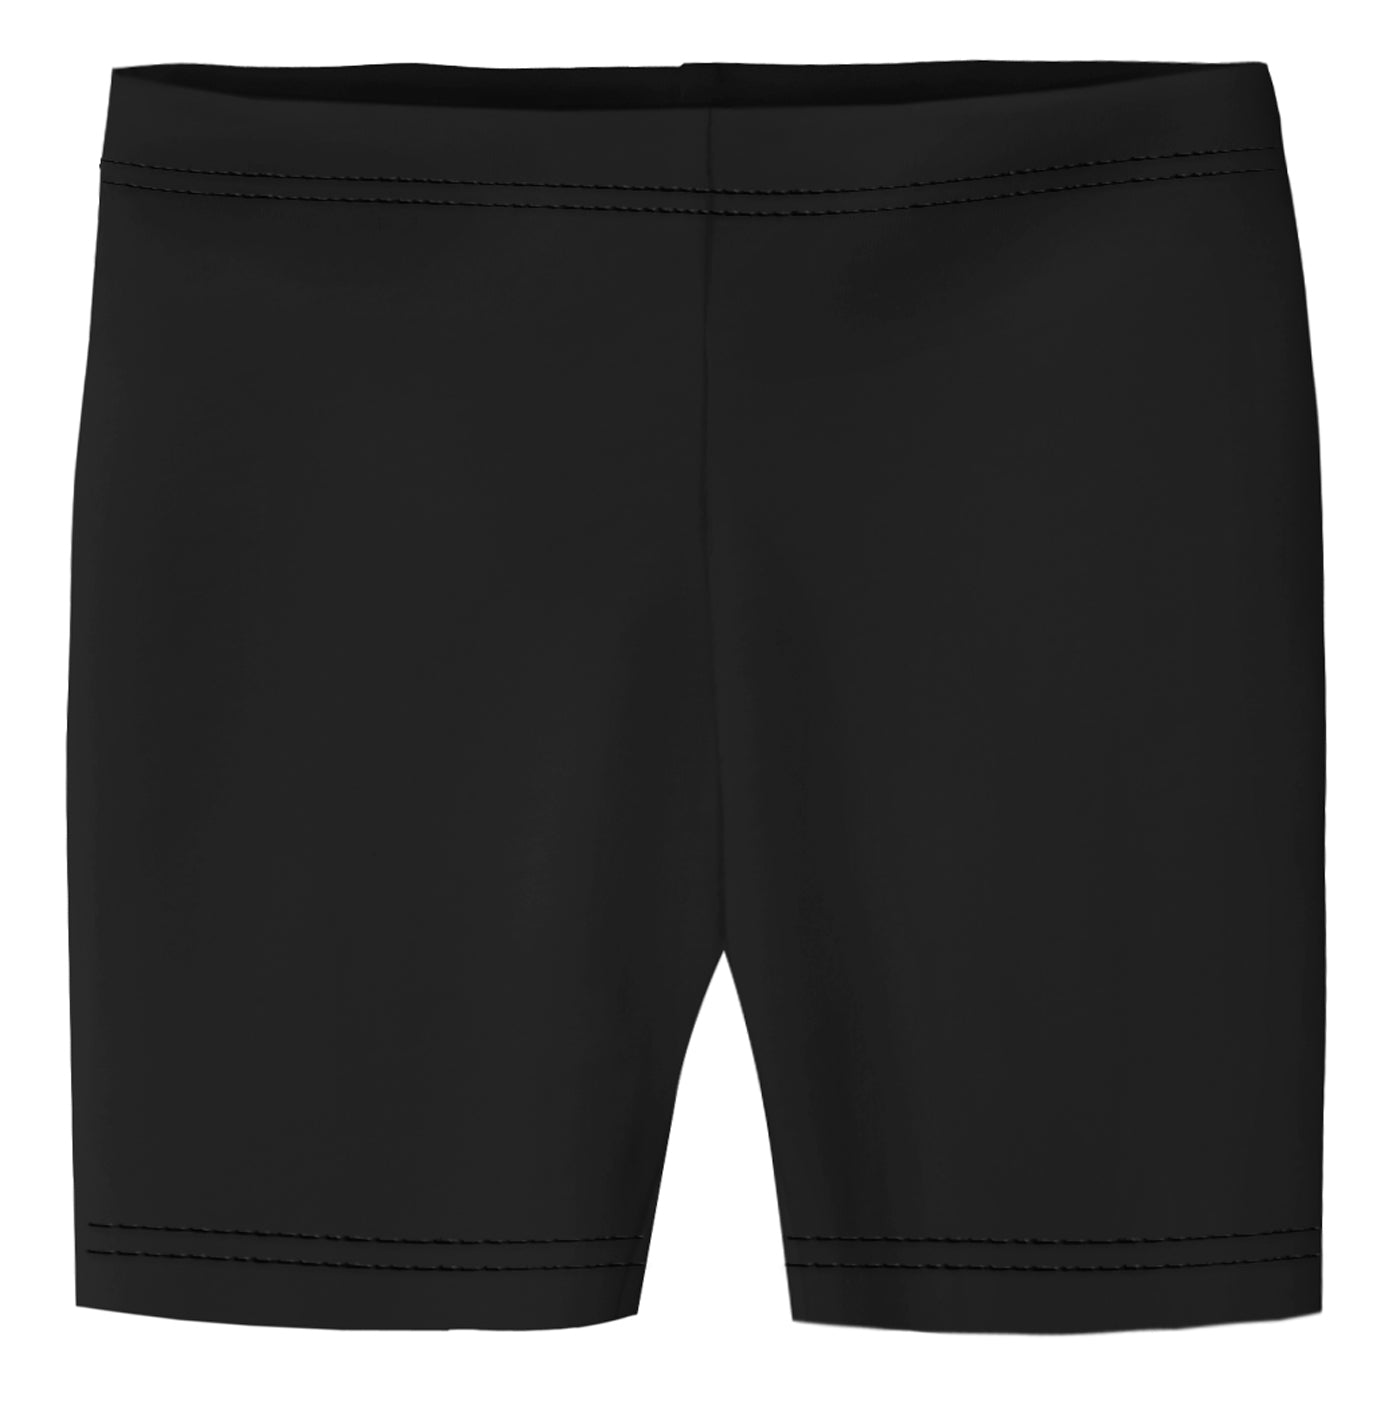 Cotton Shorts - Black - Men